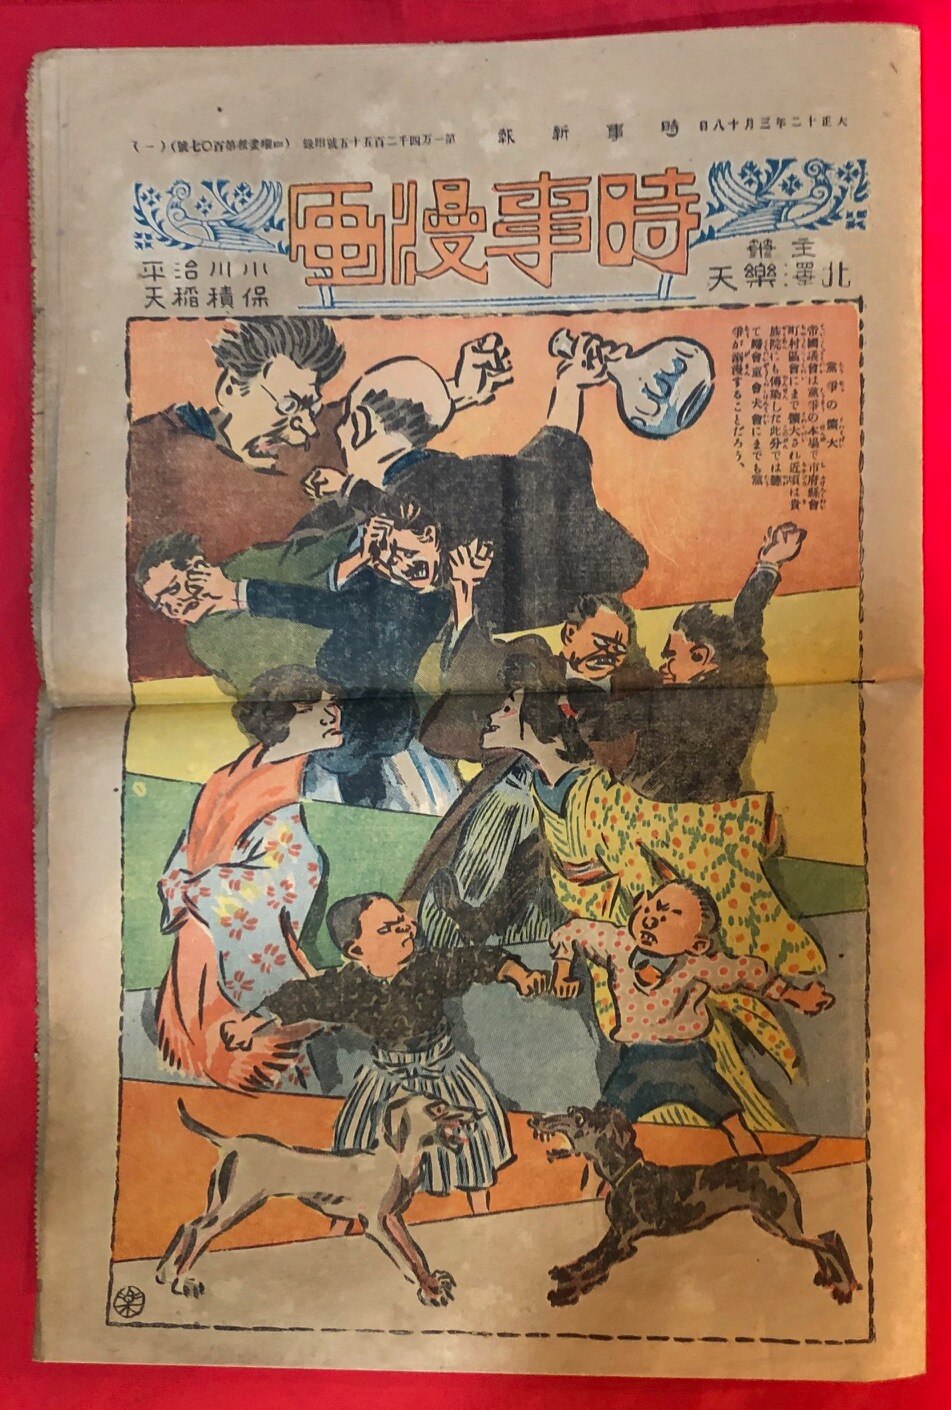 時事新報 1923年3月18日号付録 北澤楽天主筆 時事漫画 107